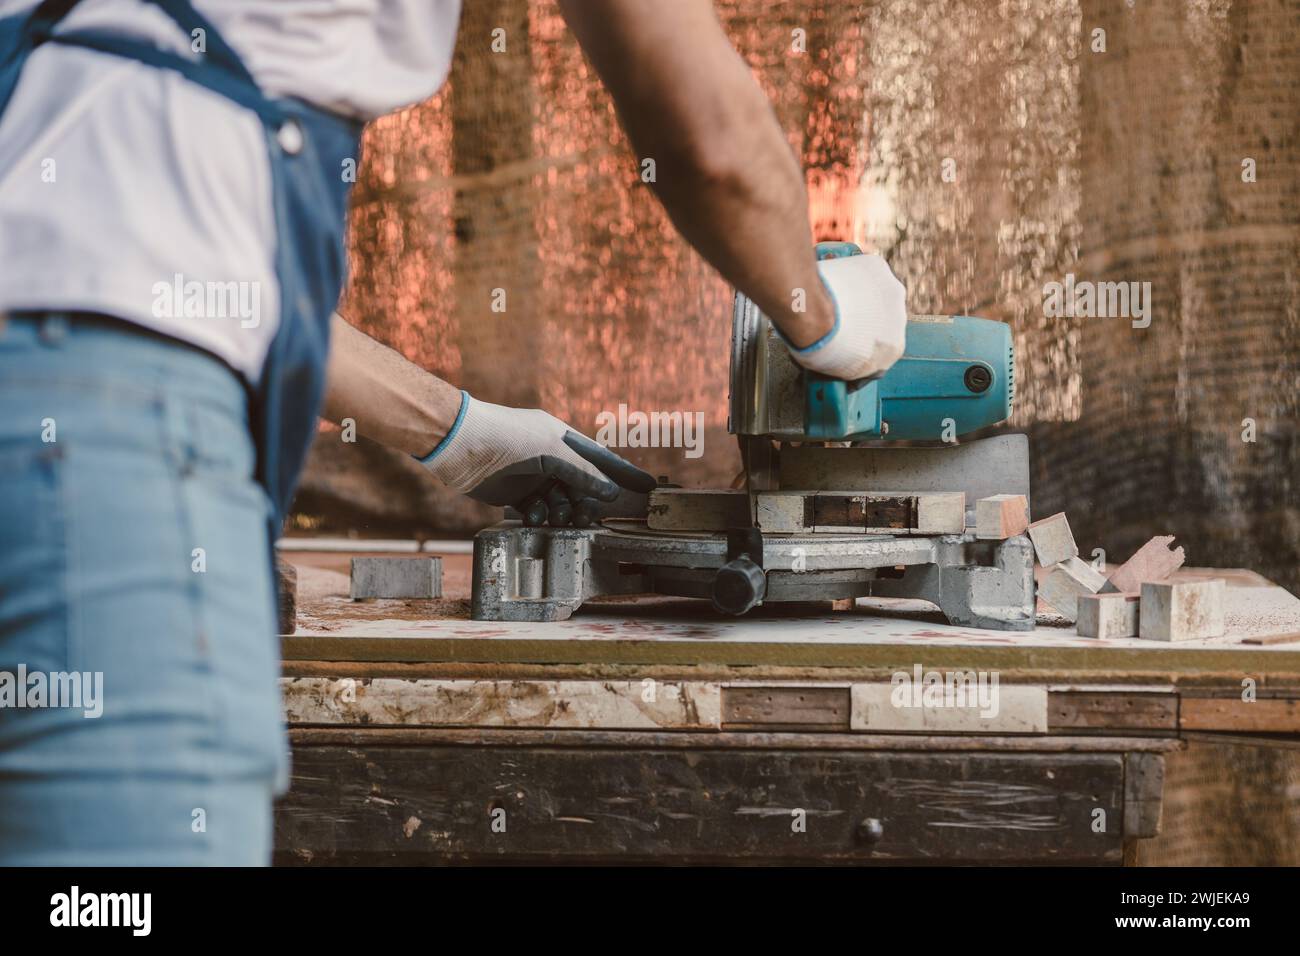 L'uomo del falegname ha tagliato il legno capolavoro di lavorazione artigianale del legno e crea mobili in legno in un'officina di legno. Foto Stock